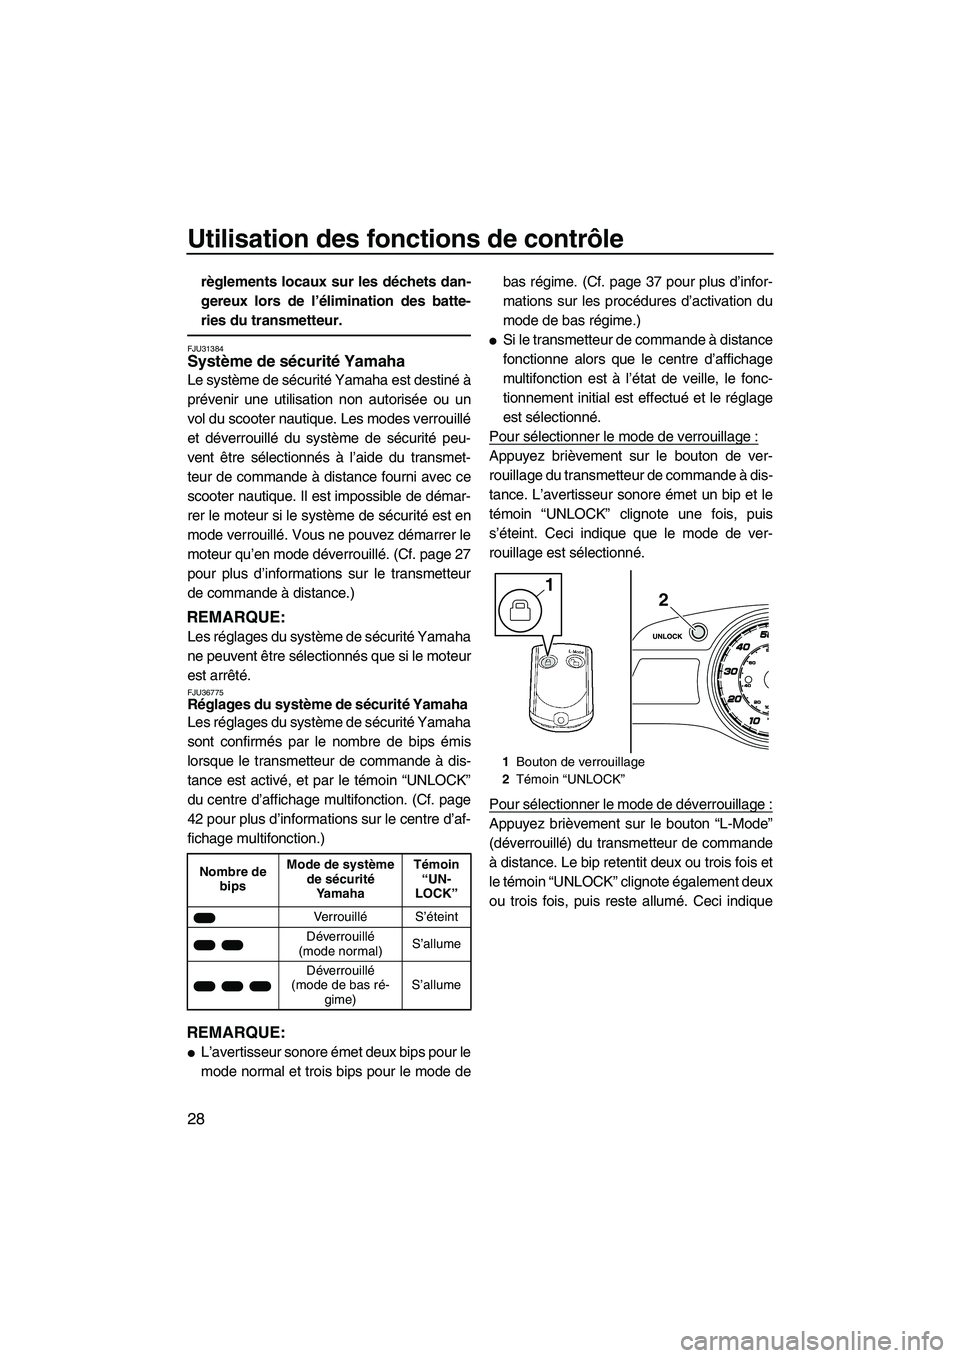 YAMAHA FX HO 2013  Notices Demploi (in French) Utilisation des fonctions de contrôle
28
règlements locaux sur les déchets dan-
gereux lors de l’élimination des batte-
ries du transmetteur.
FJU31384Système de sécurité Yamaha 
Le système d